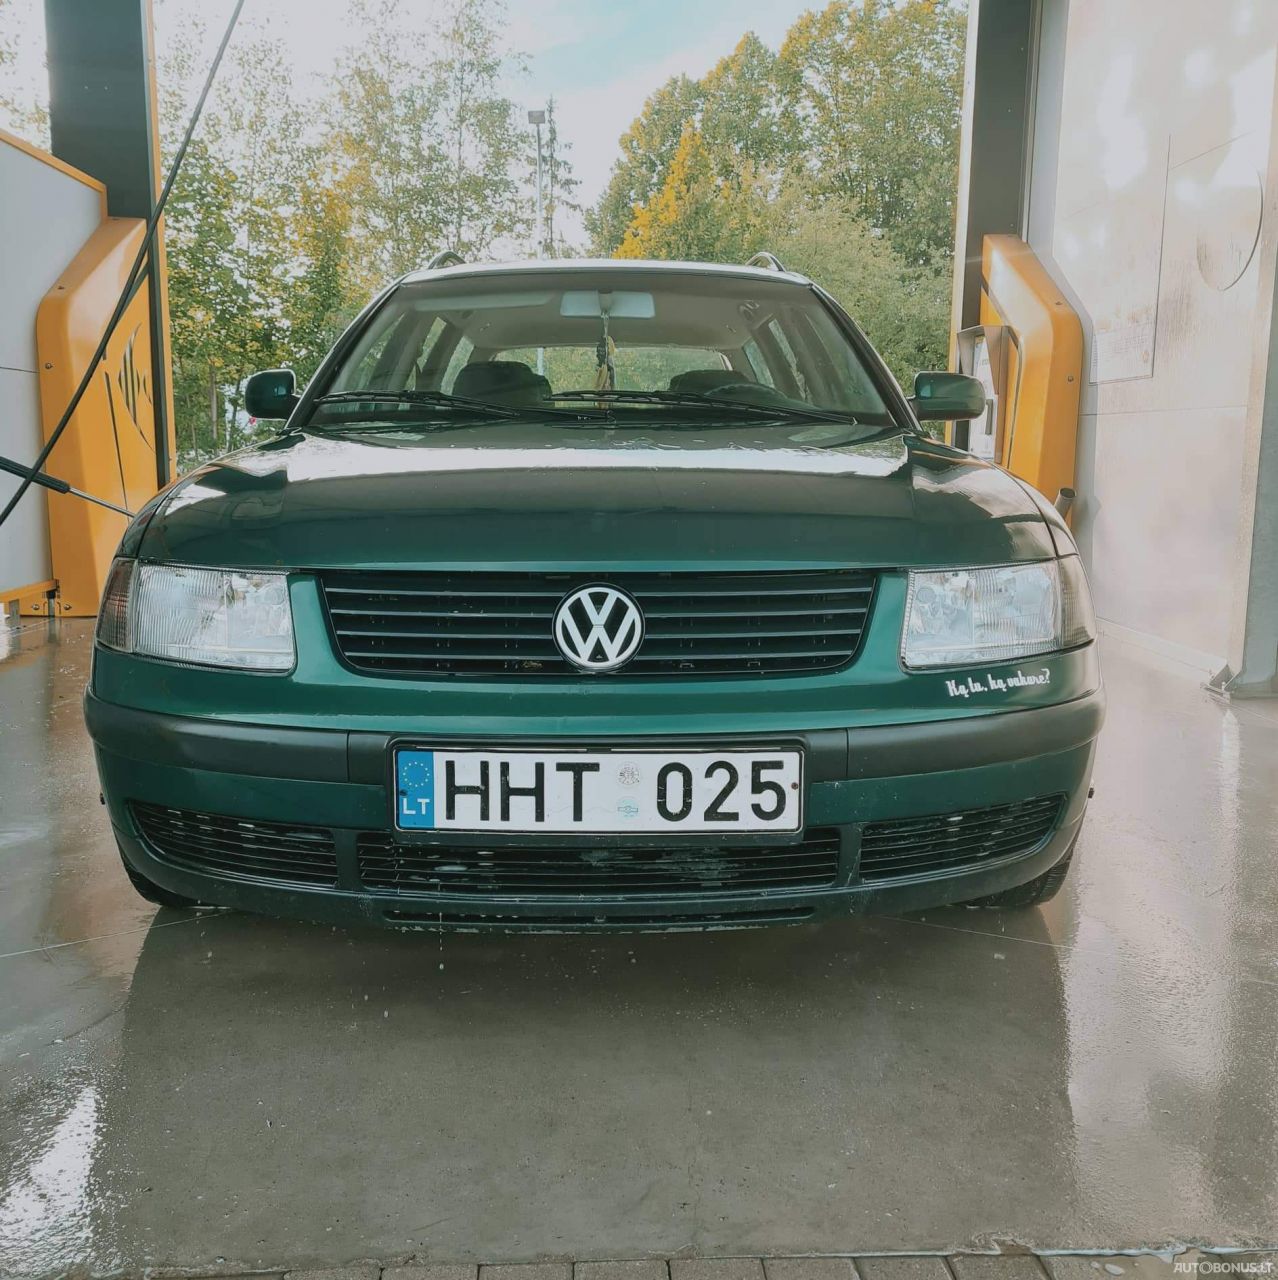 Volkswagen Passat, 1.9 l., universalas